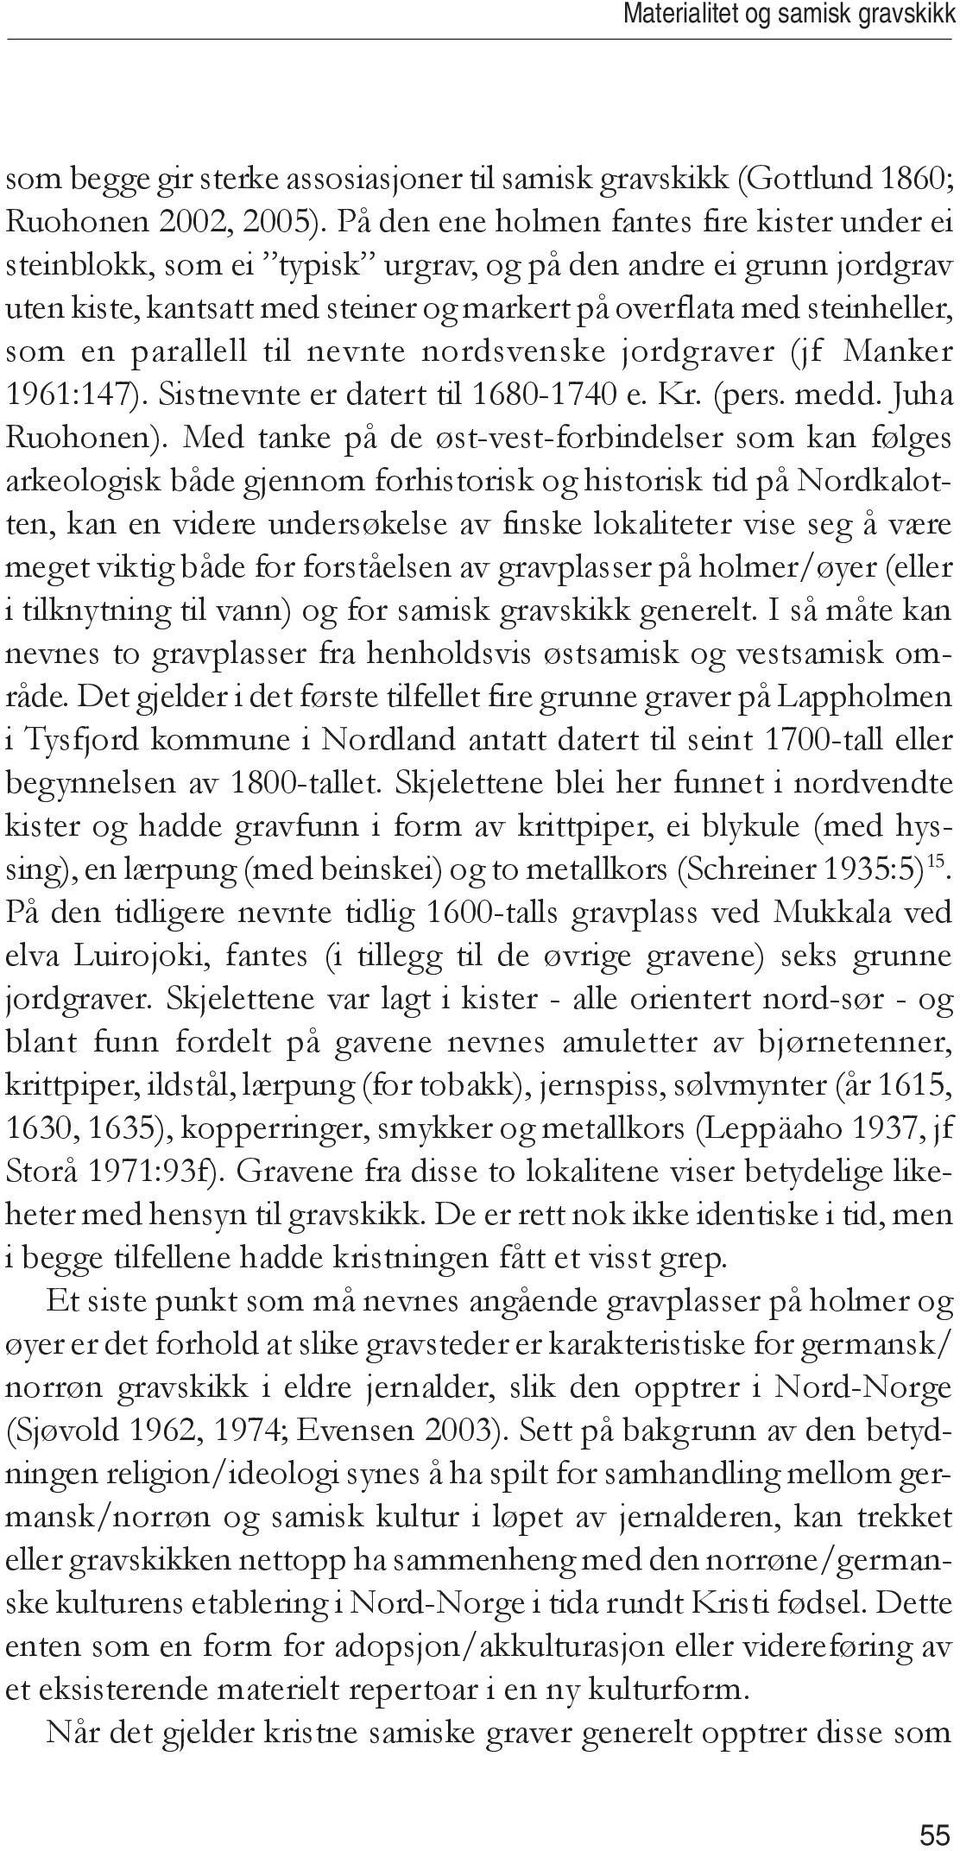 parallell til nevnte nordsvenske jordgraver (jf Manker 1961:147). Sistnevnte er datert til 1680-1740 e. Kr. (pers. medd. Juha Ruohonen).